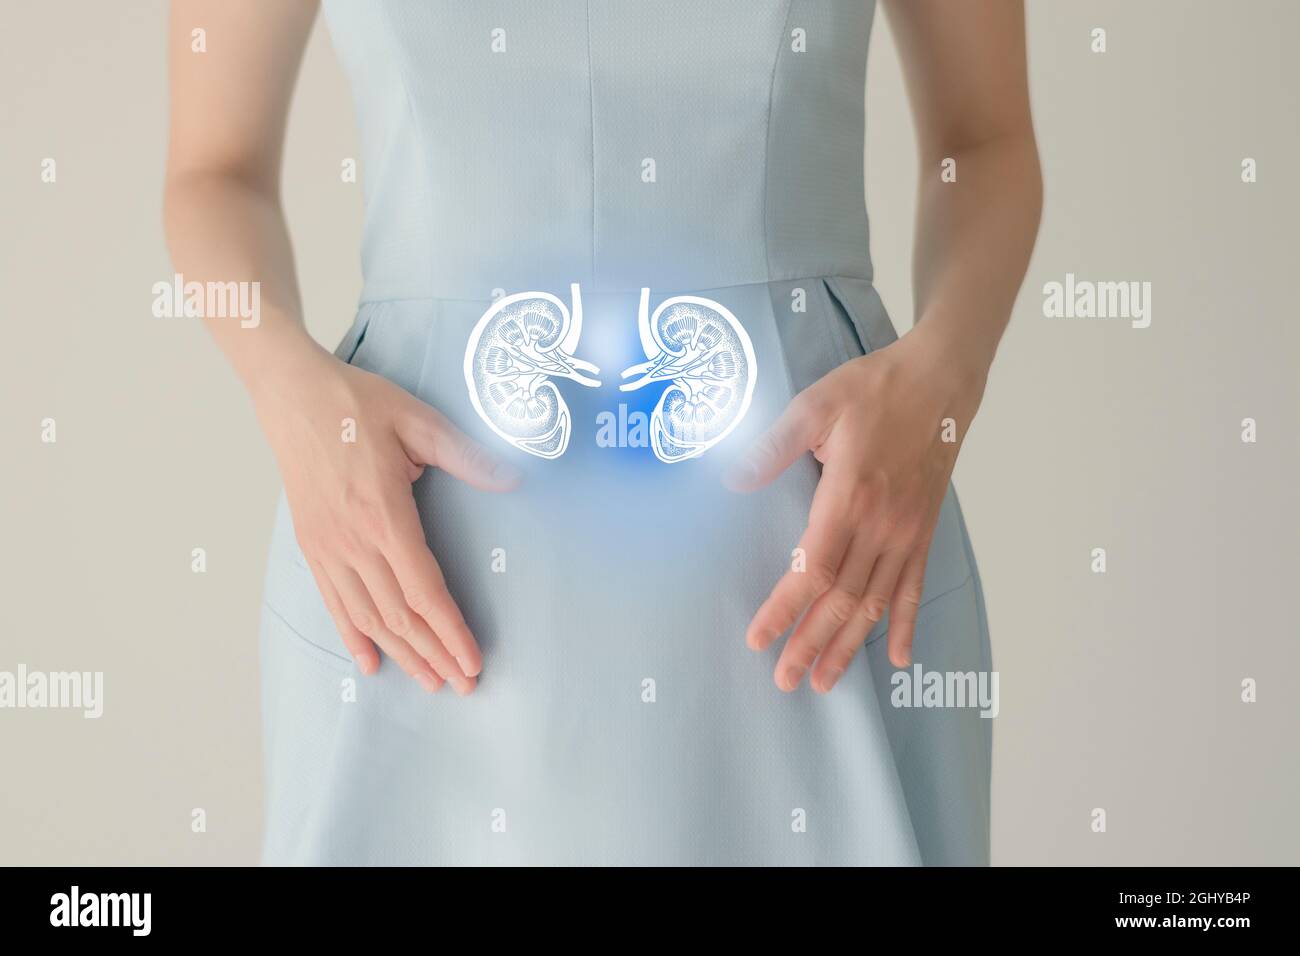 Nicht erkennbare weibliche Patientin in blauer Kleidung, hervorgehobene, von Hand gezeichnete Niere in den Händen. Das menschliche Nierensystem stellt ein Konzept dar. Stockfoto